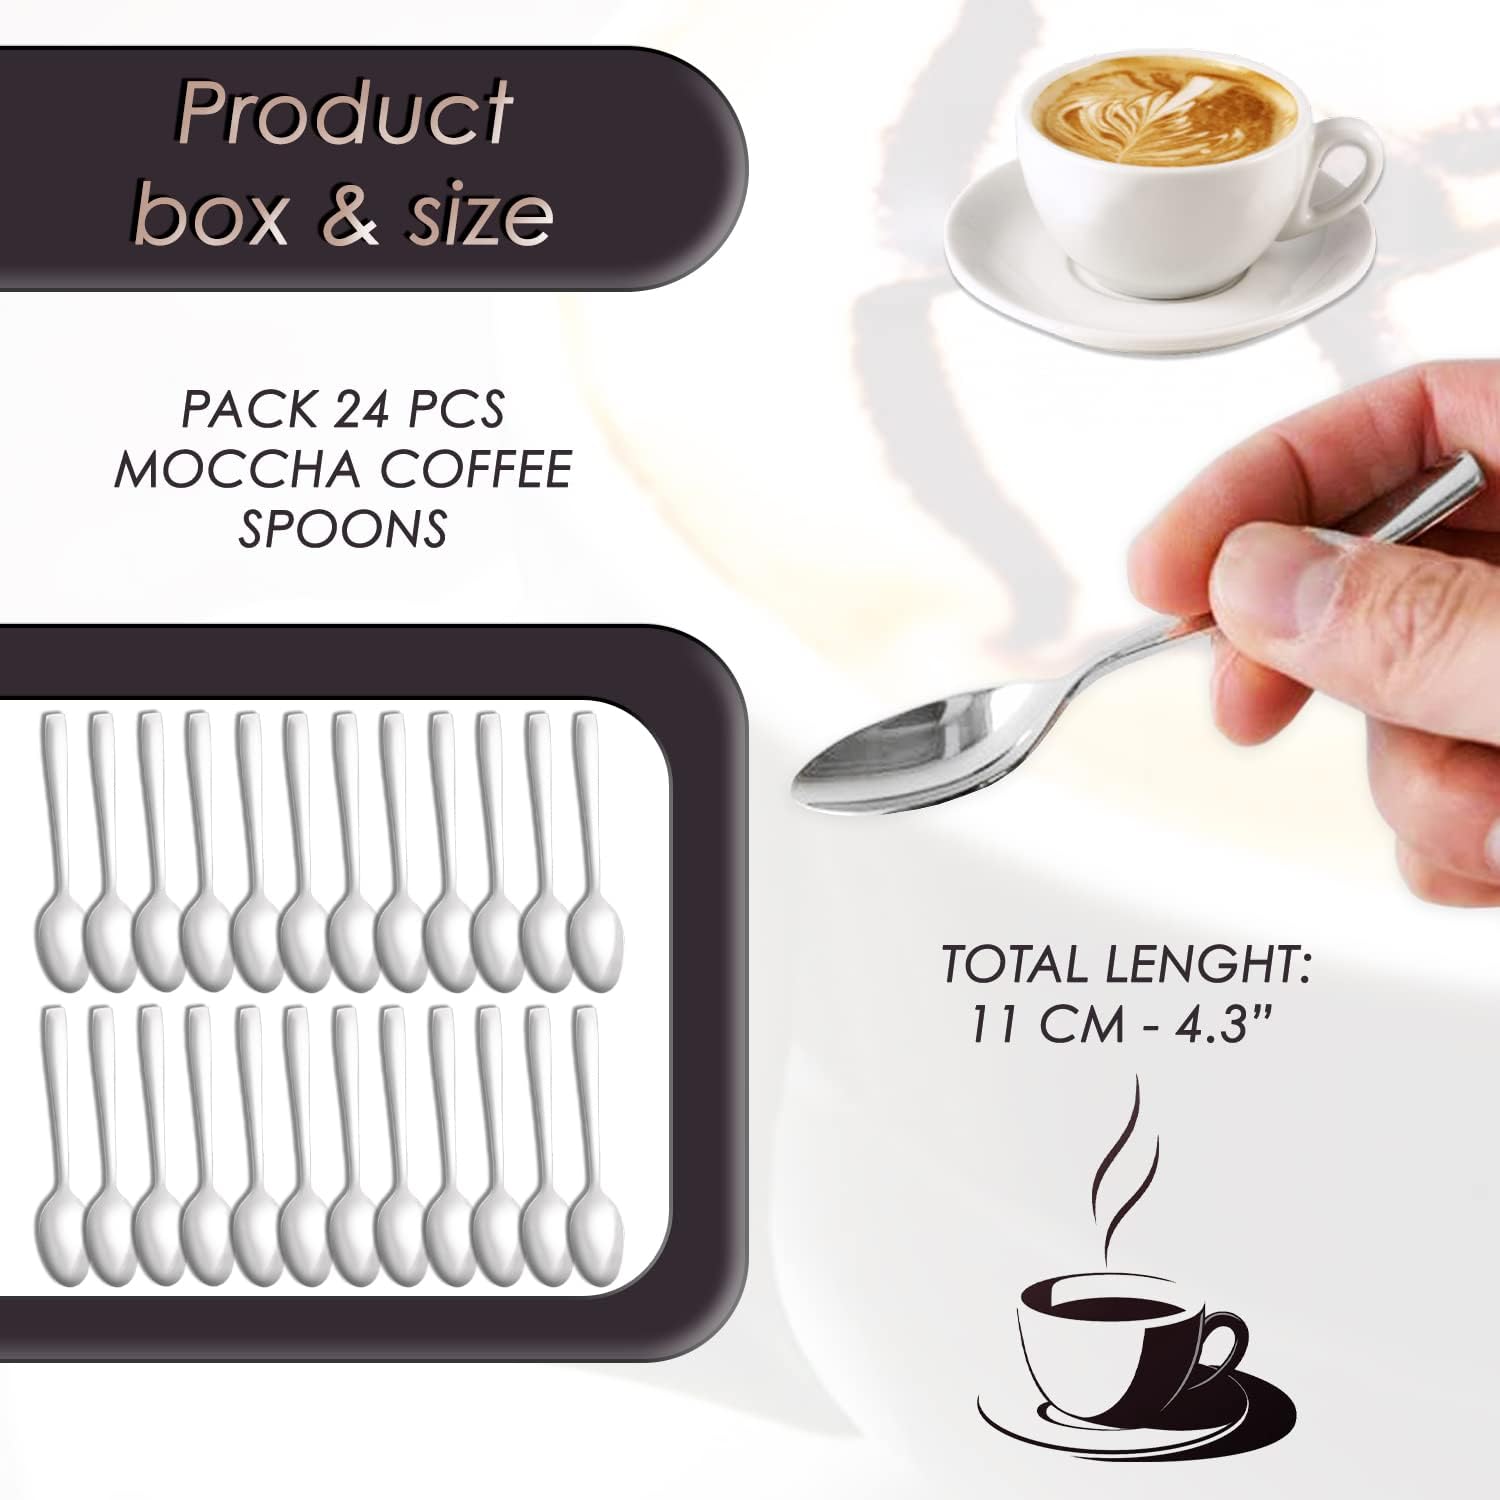 Cucharillas cafe pequeñas acero inoxidable aptas para hogar y restaurantes  cucharas cafe cuchara cafe cuchara te cucharas de cafe cucharas pequeñas